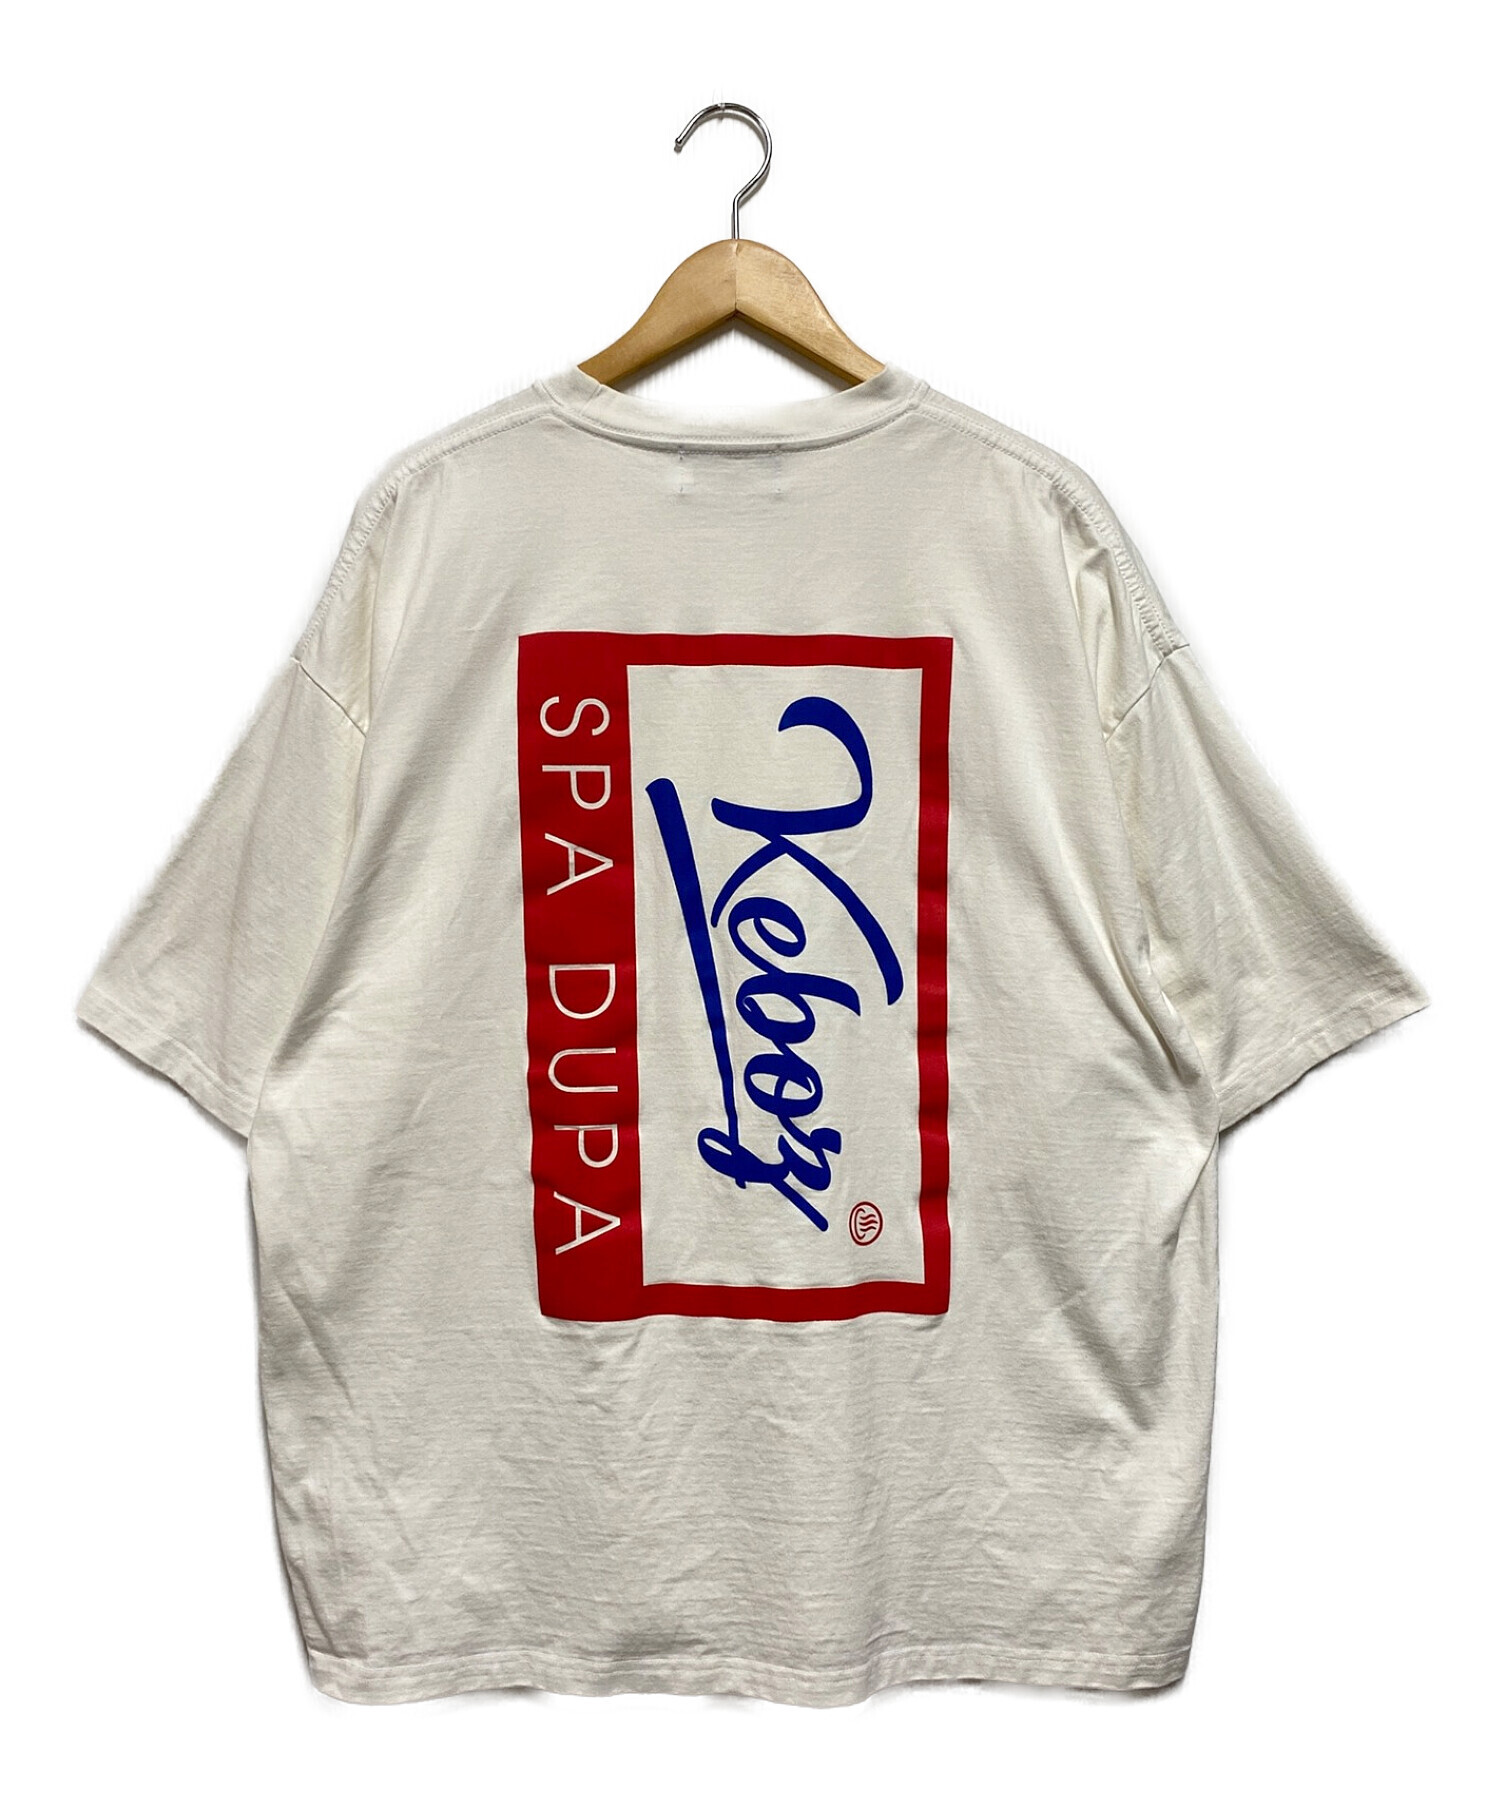 KEBOZ (ケボズ) FRO CLUB (フロクラブ) コラボロゴTシャツ ホワイト サイズ:L